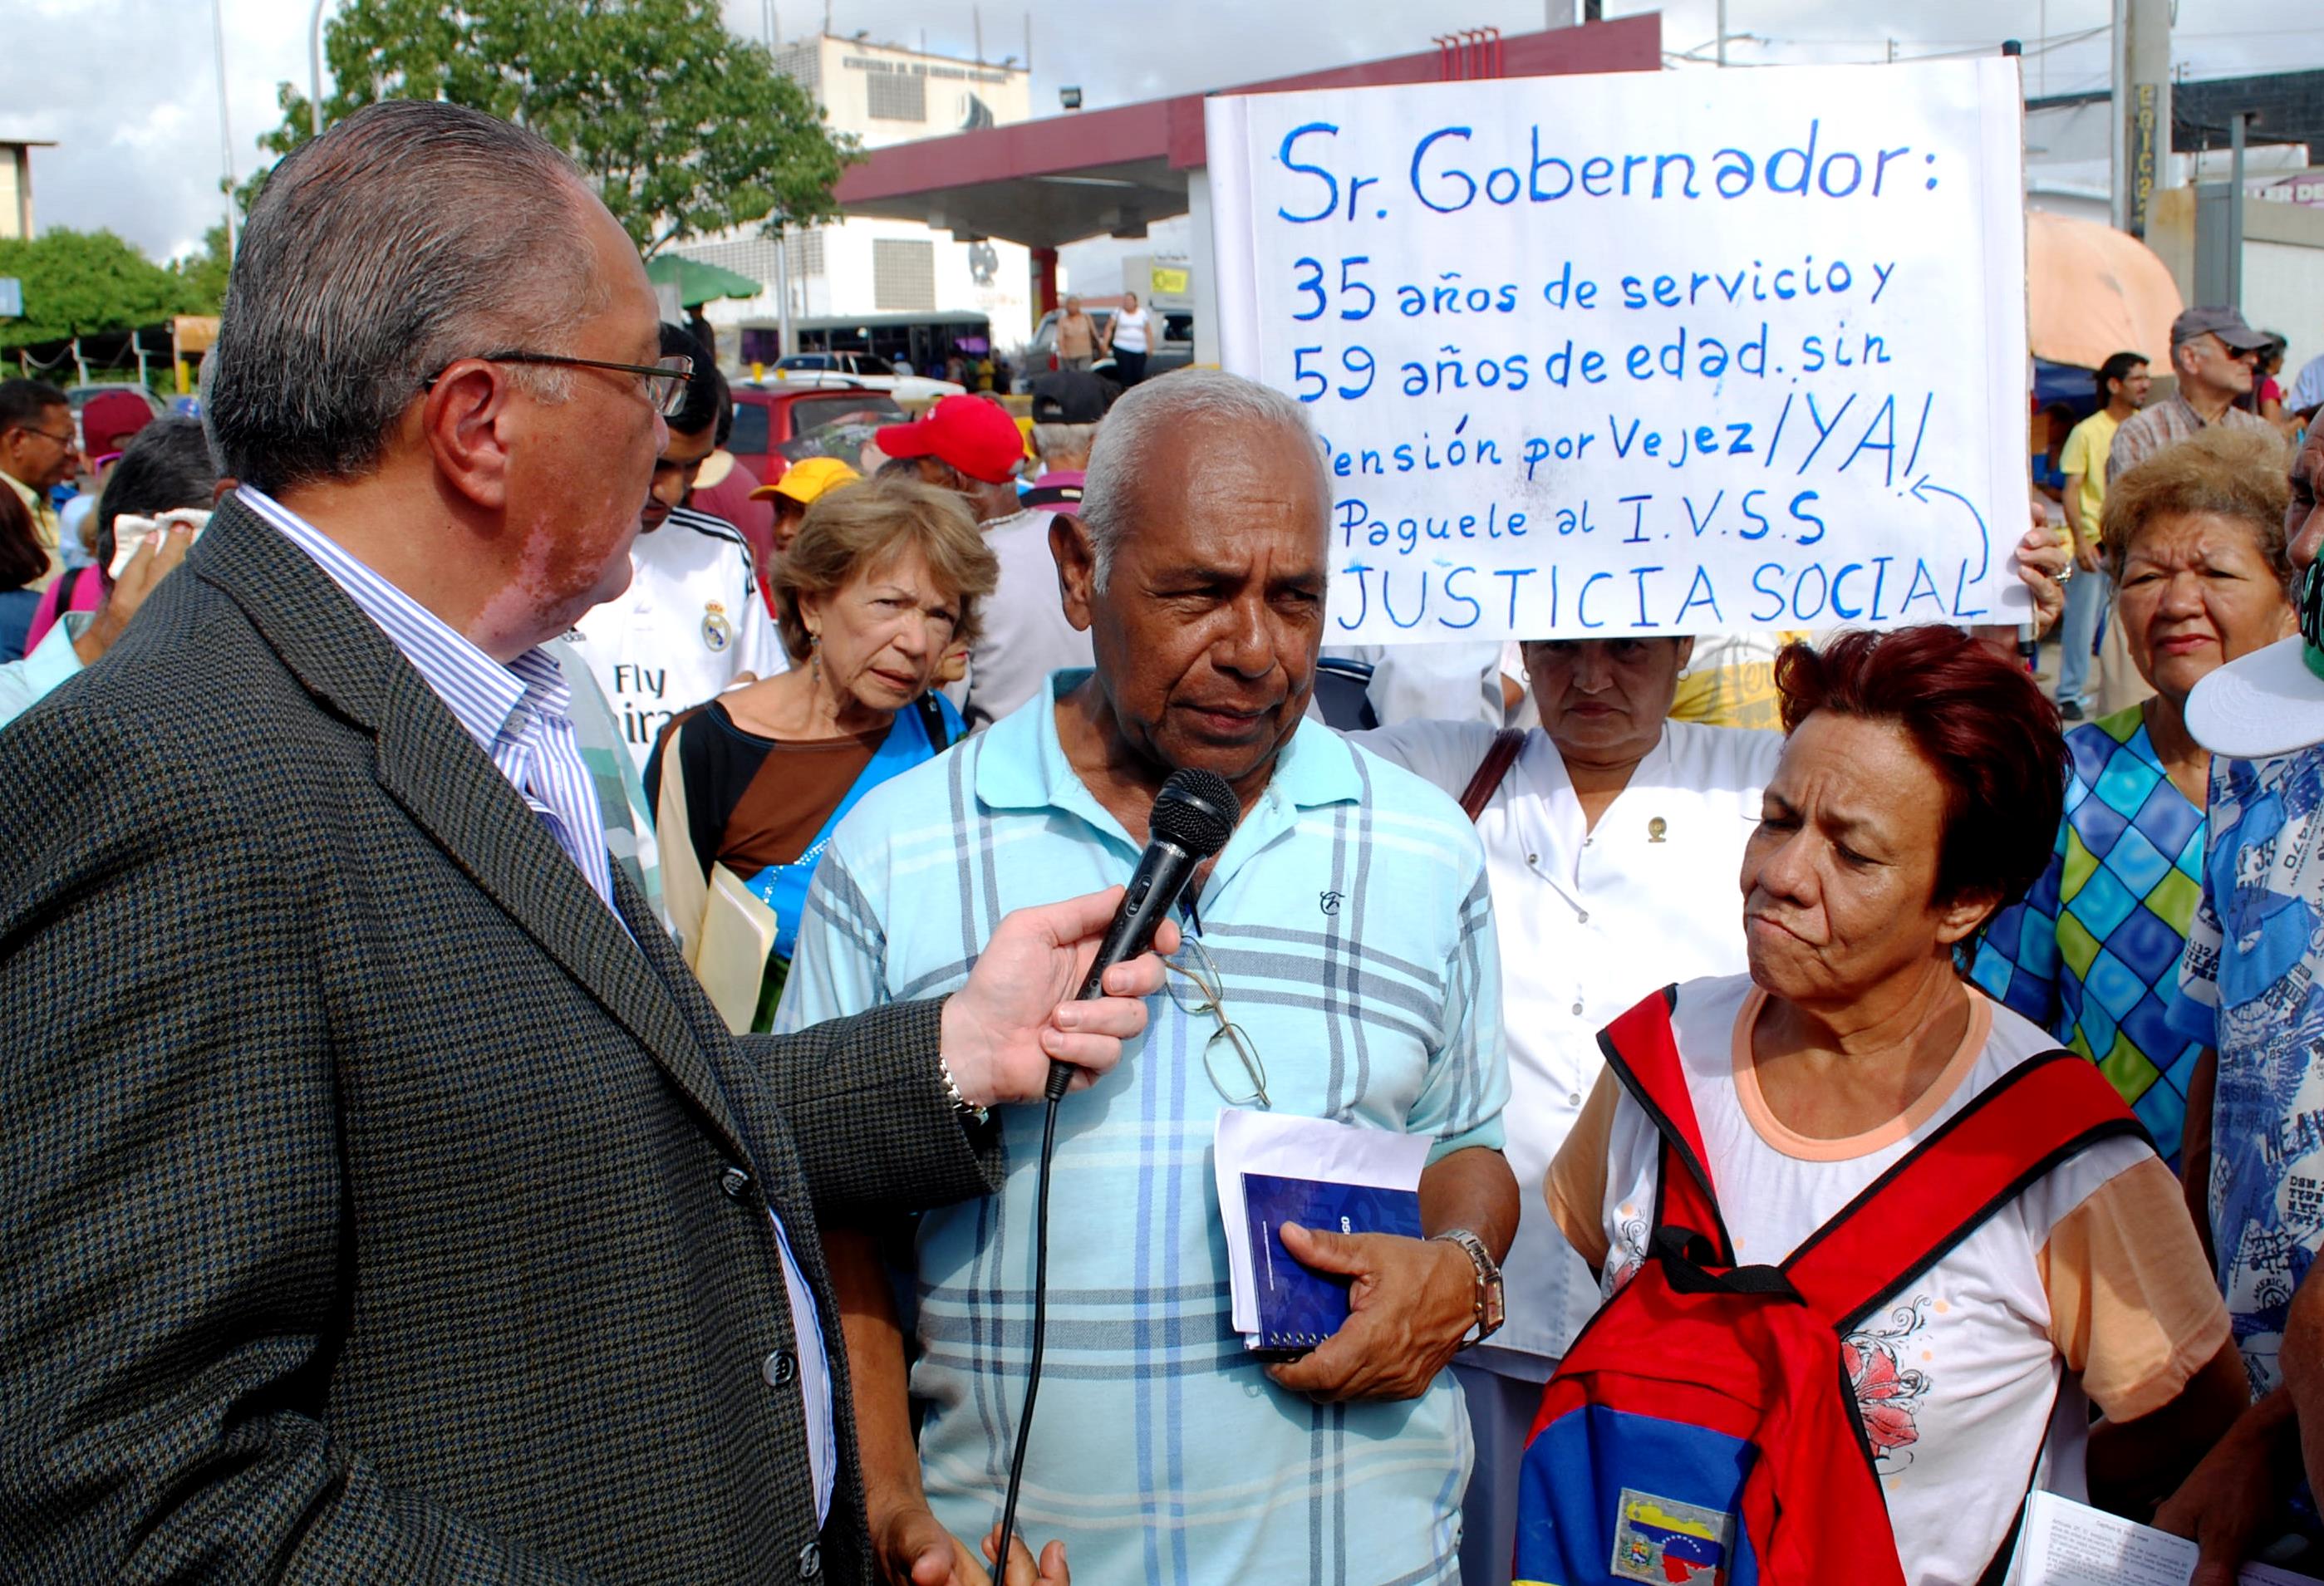 Eliseo Fermín: Gobierno dice ser humanista, pero no respeta los derechos de jubilados